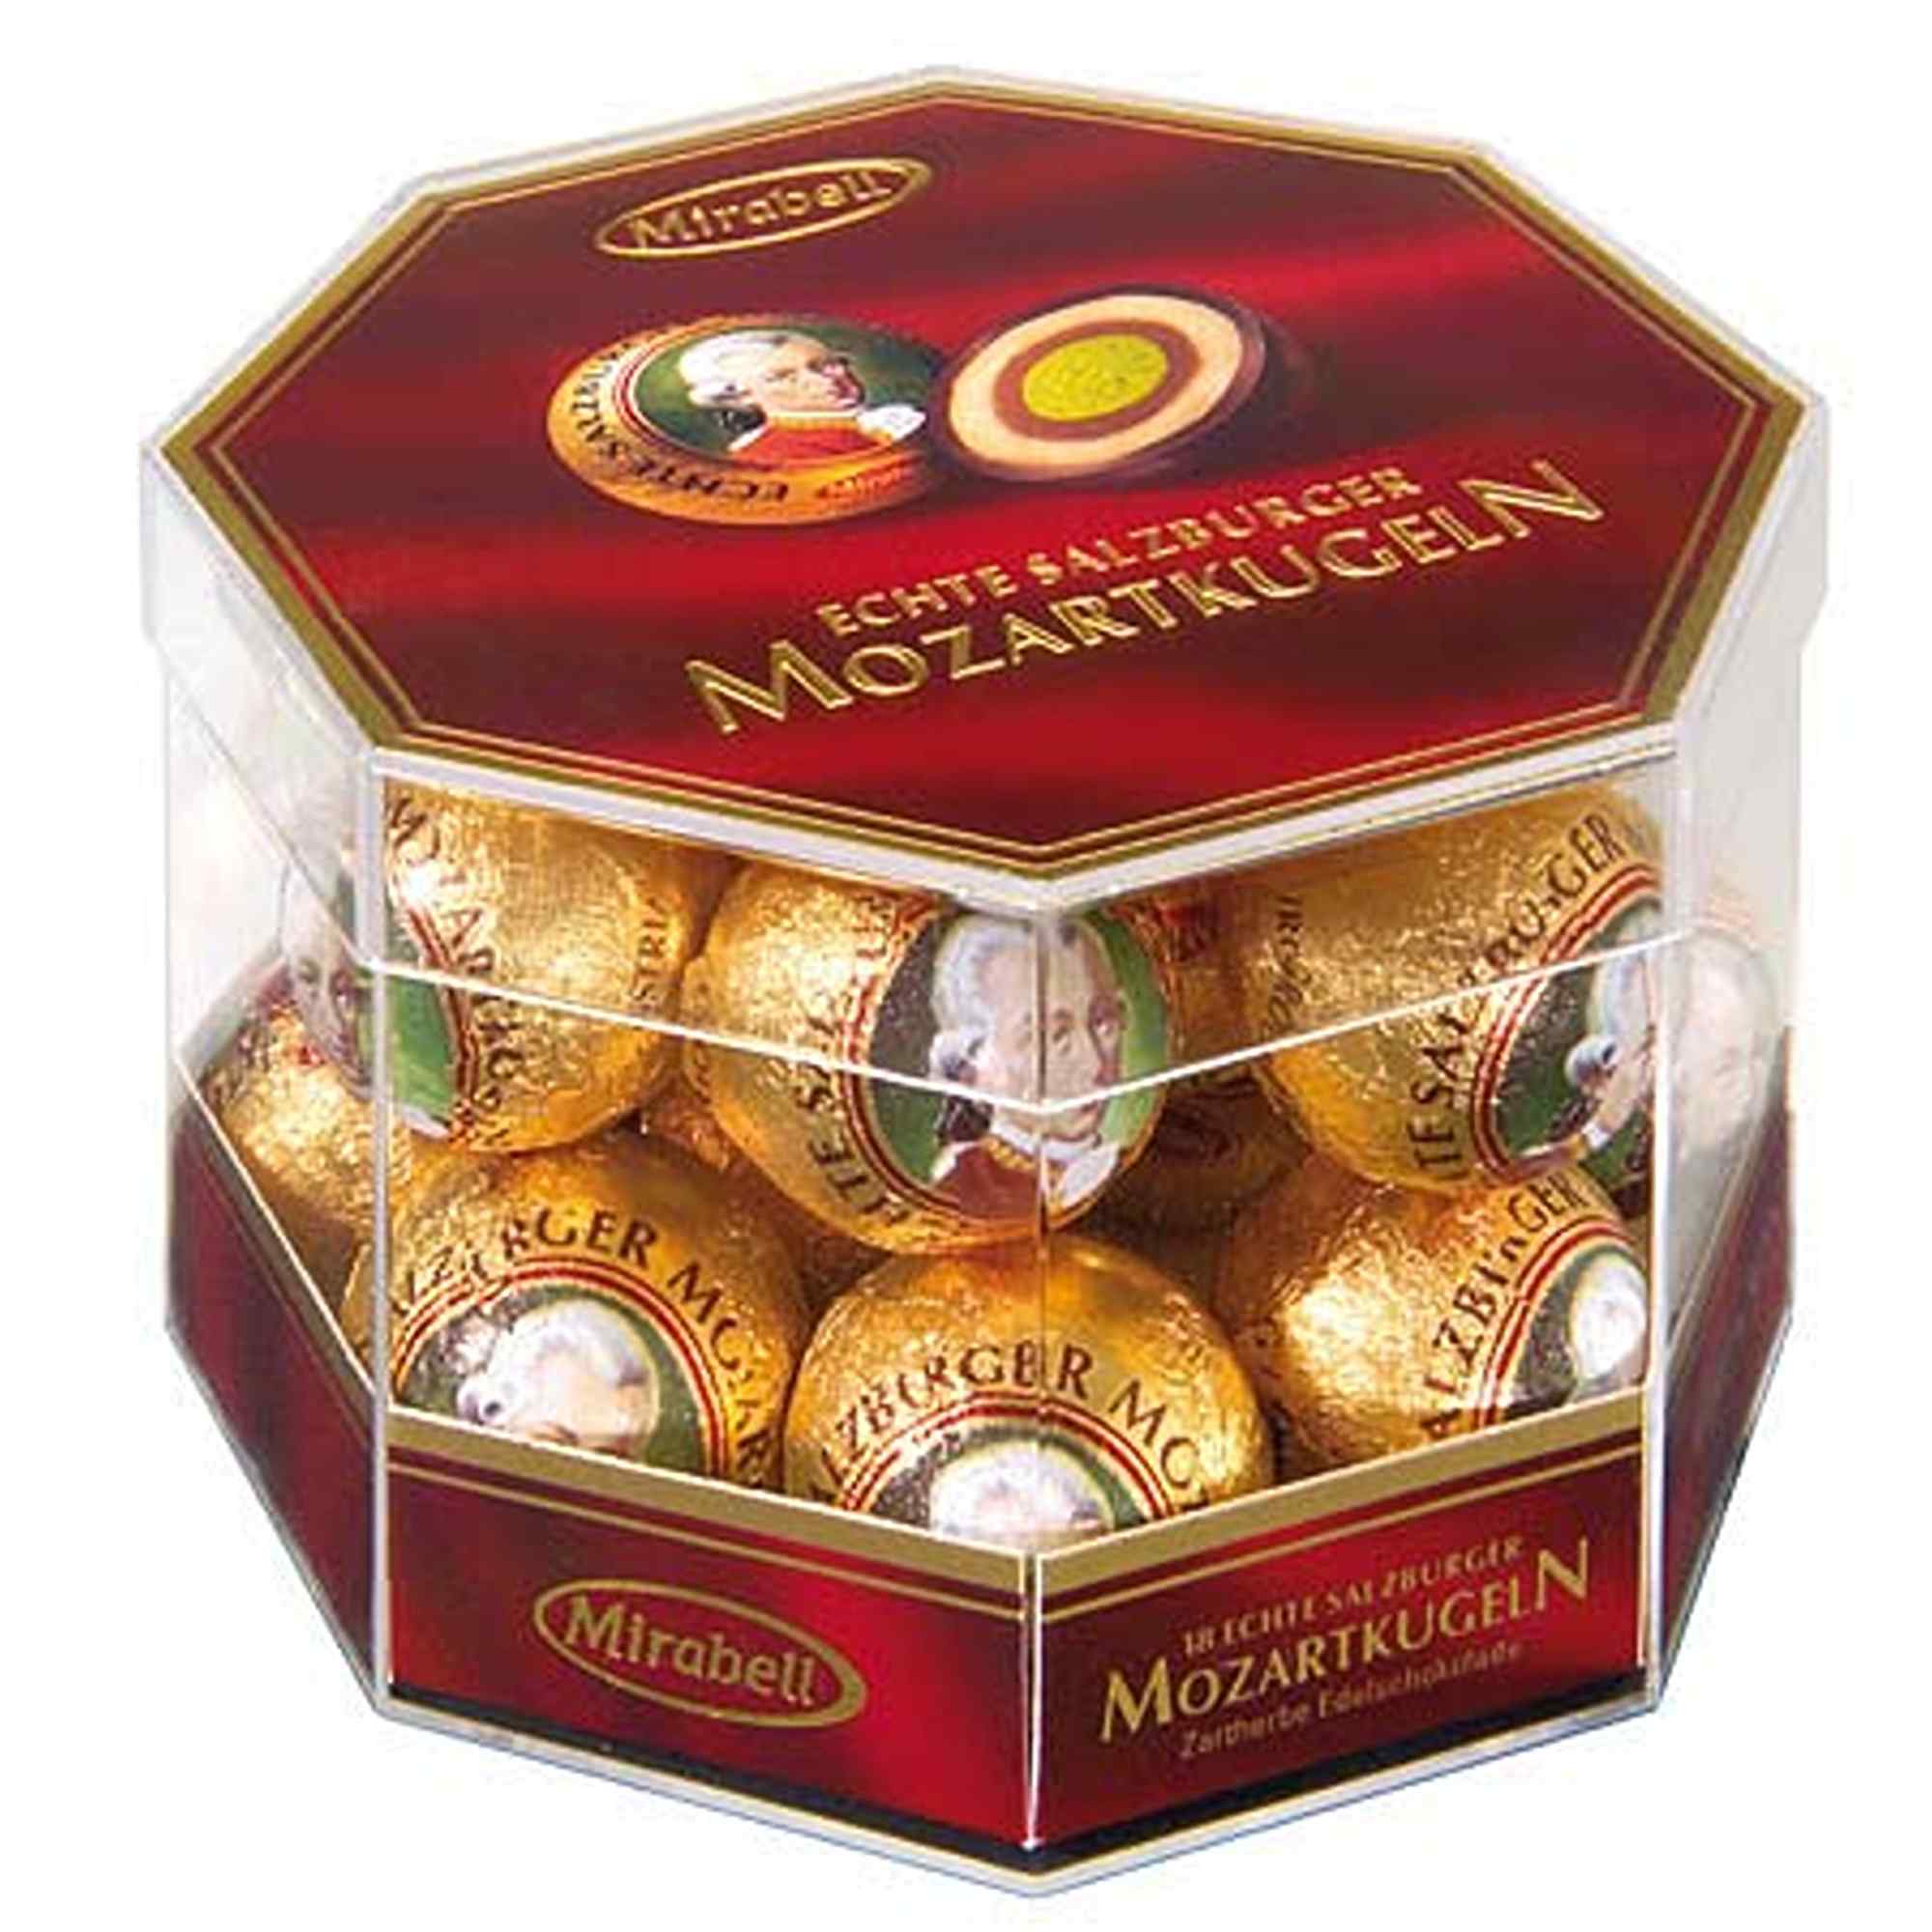 Austria Mozartkugeln Chocolate Pralines - Piccantino Online Shop  International